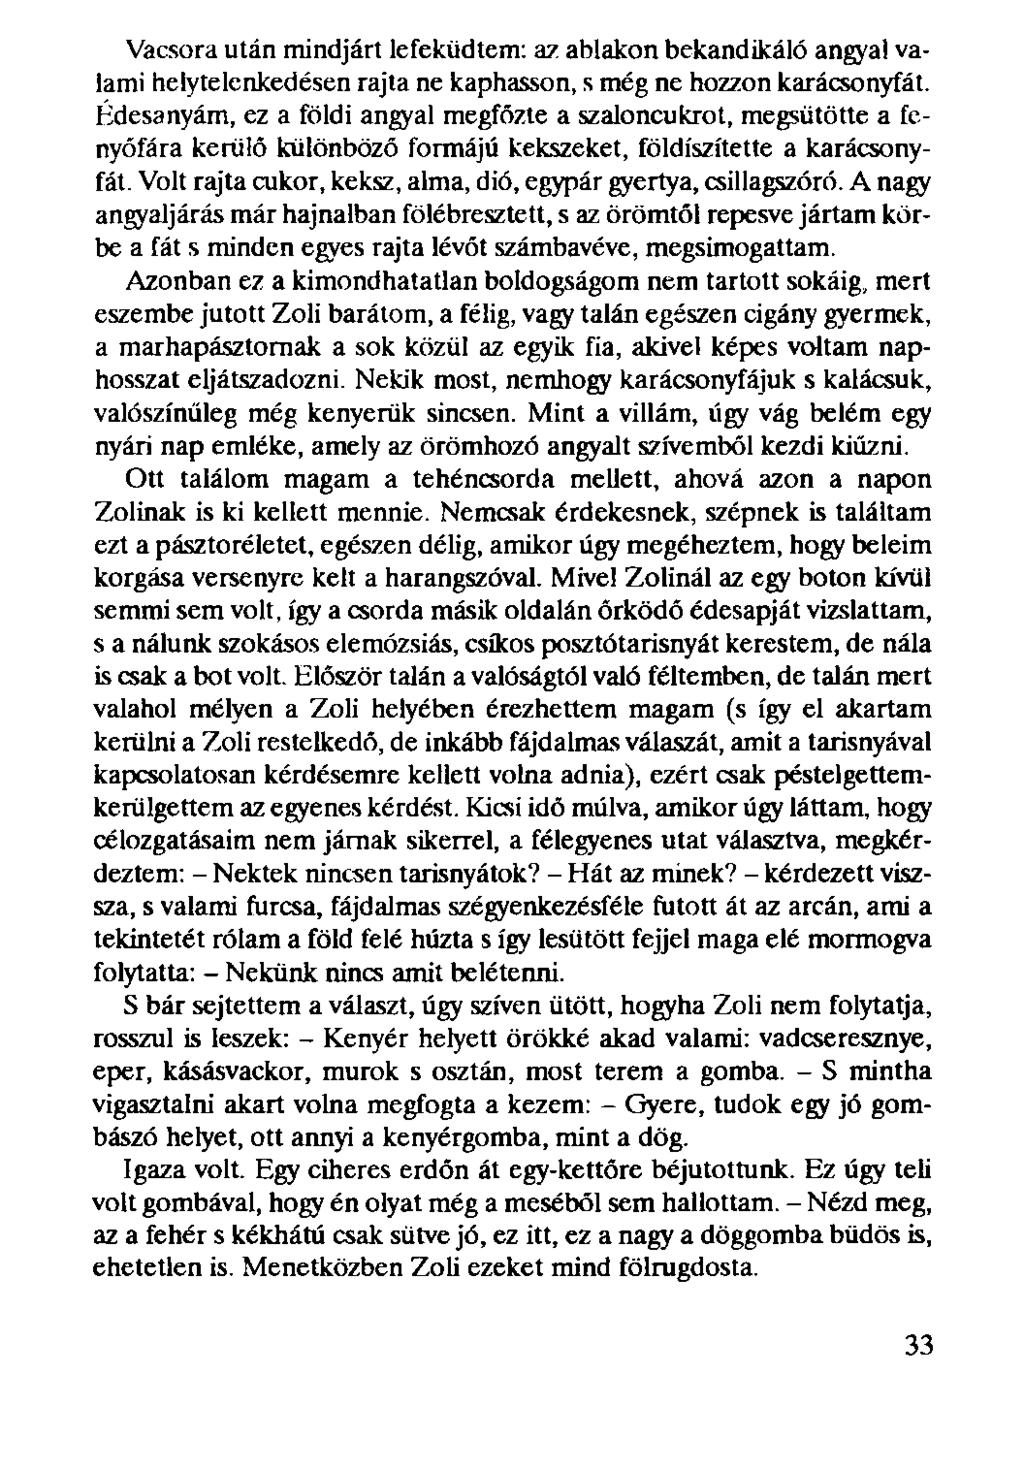 Dr.TORÓ ÁRPÁD KAPA MELLŐL KASZÁS ELLEN - PDF Free Download